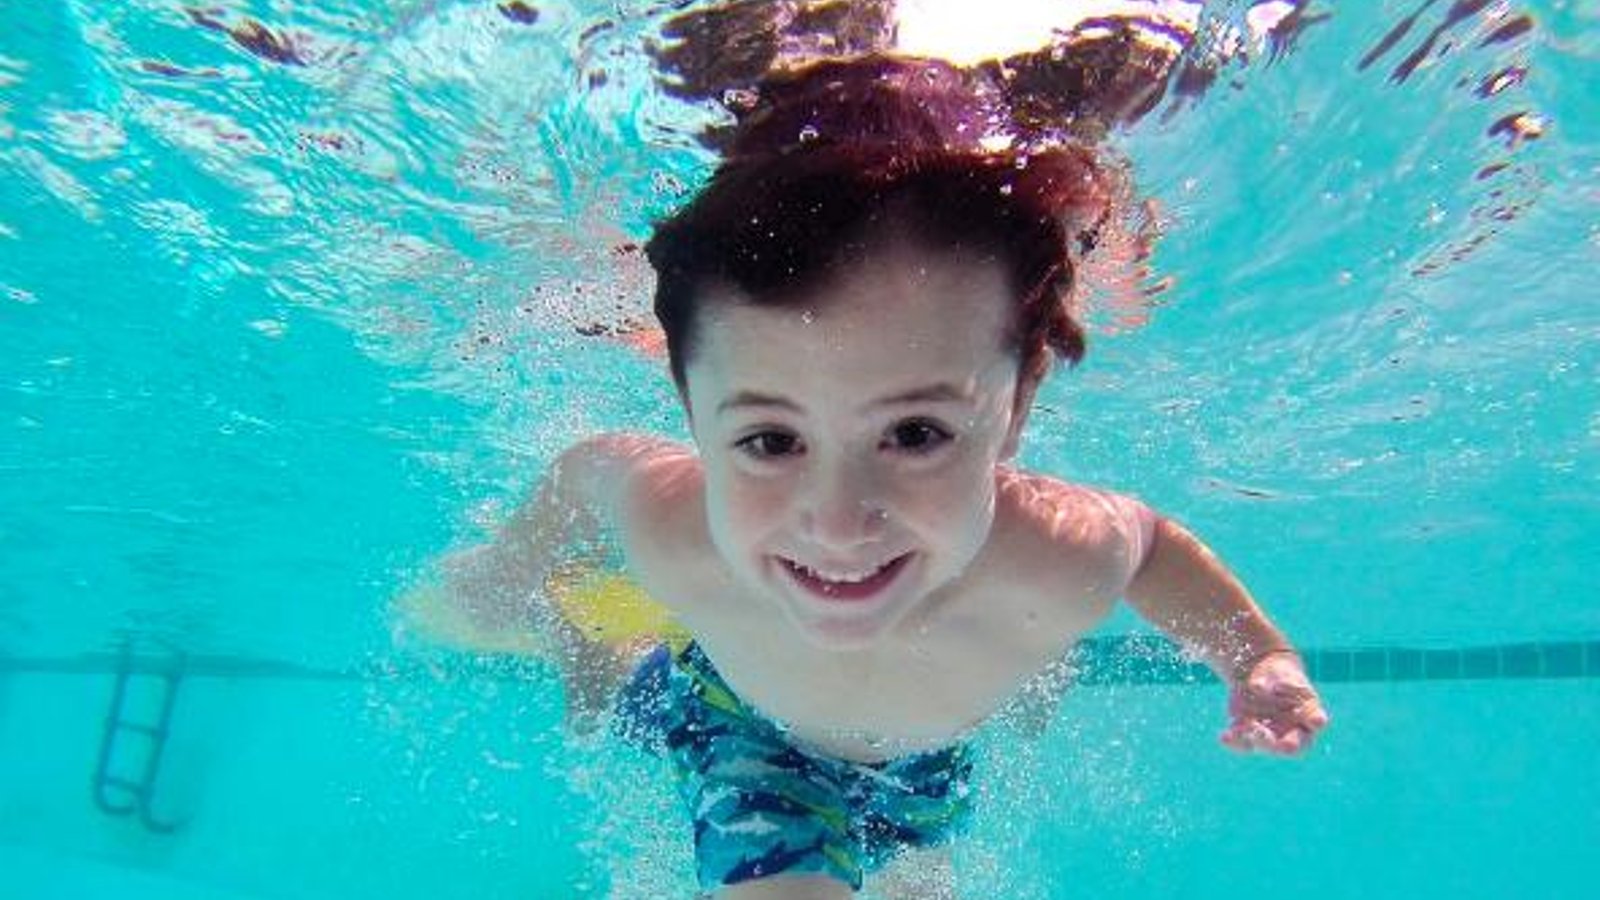 La noyade sèche est un danger qui guette de nombreux enfants. Voici comment en reconnaître les signes.